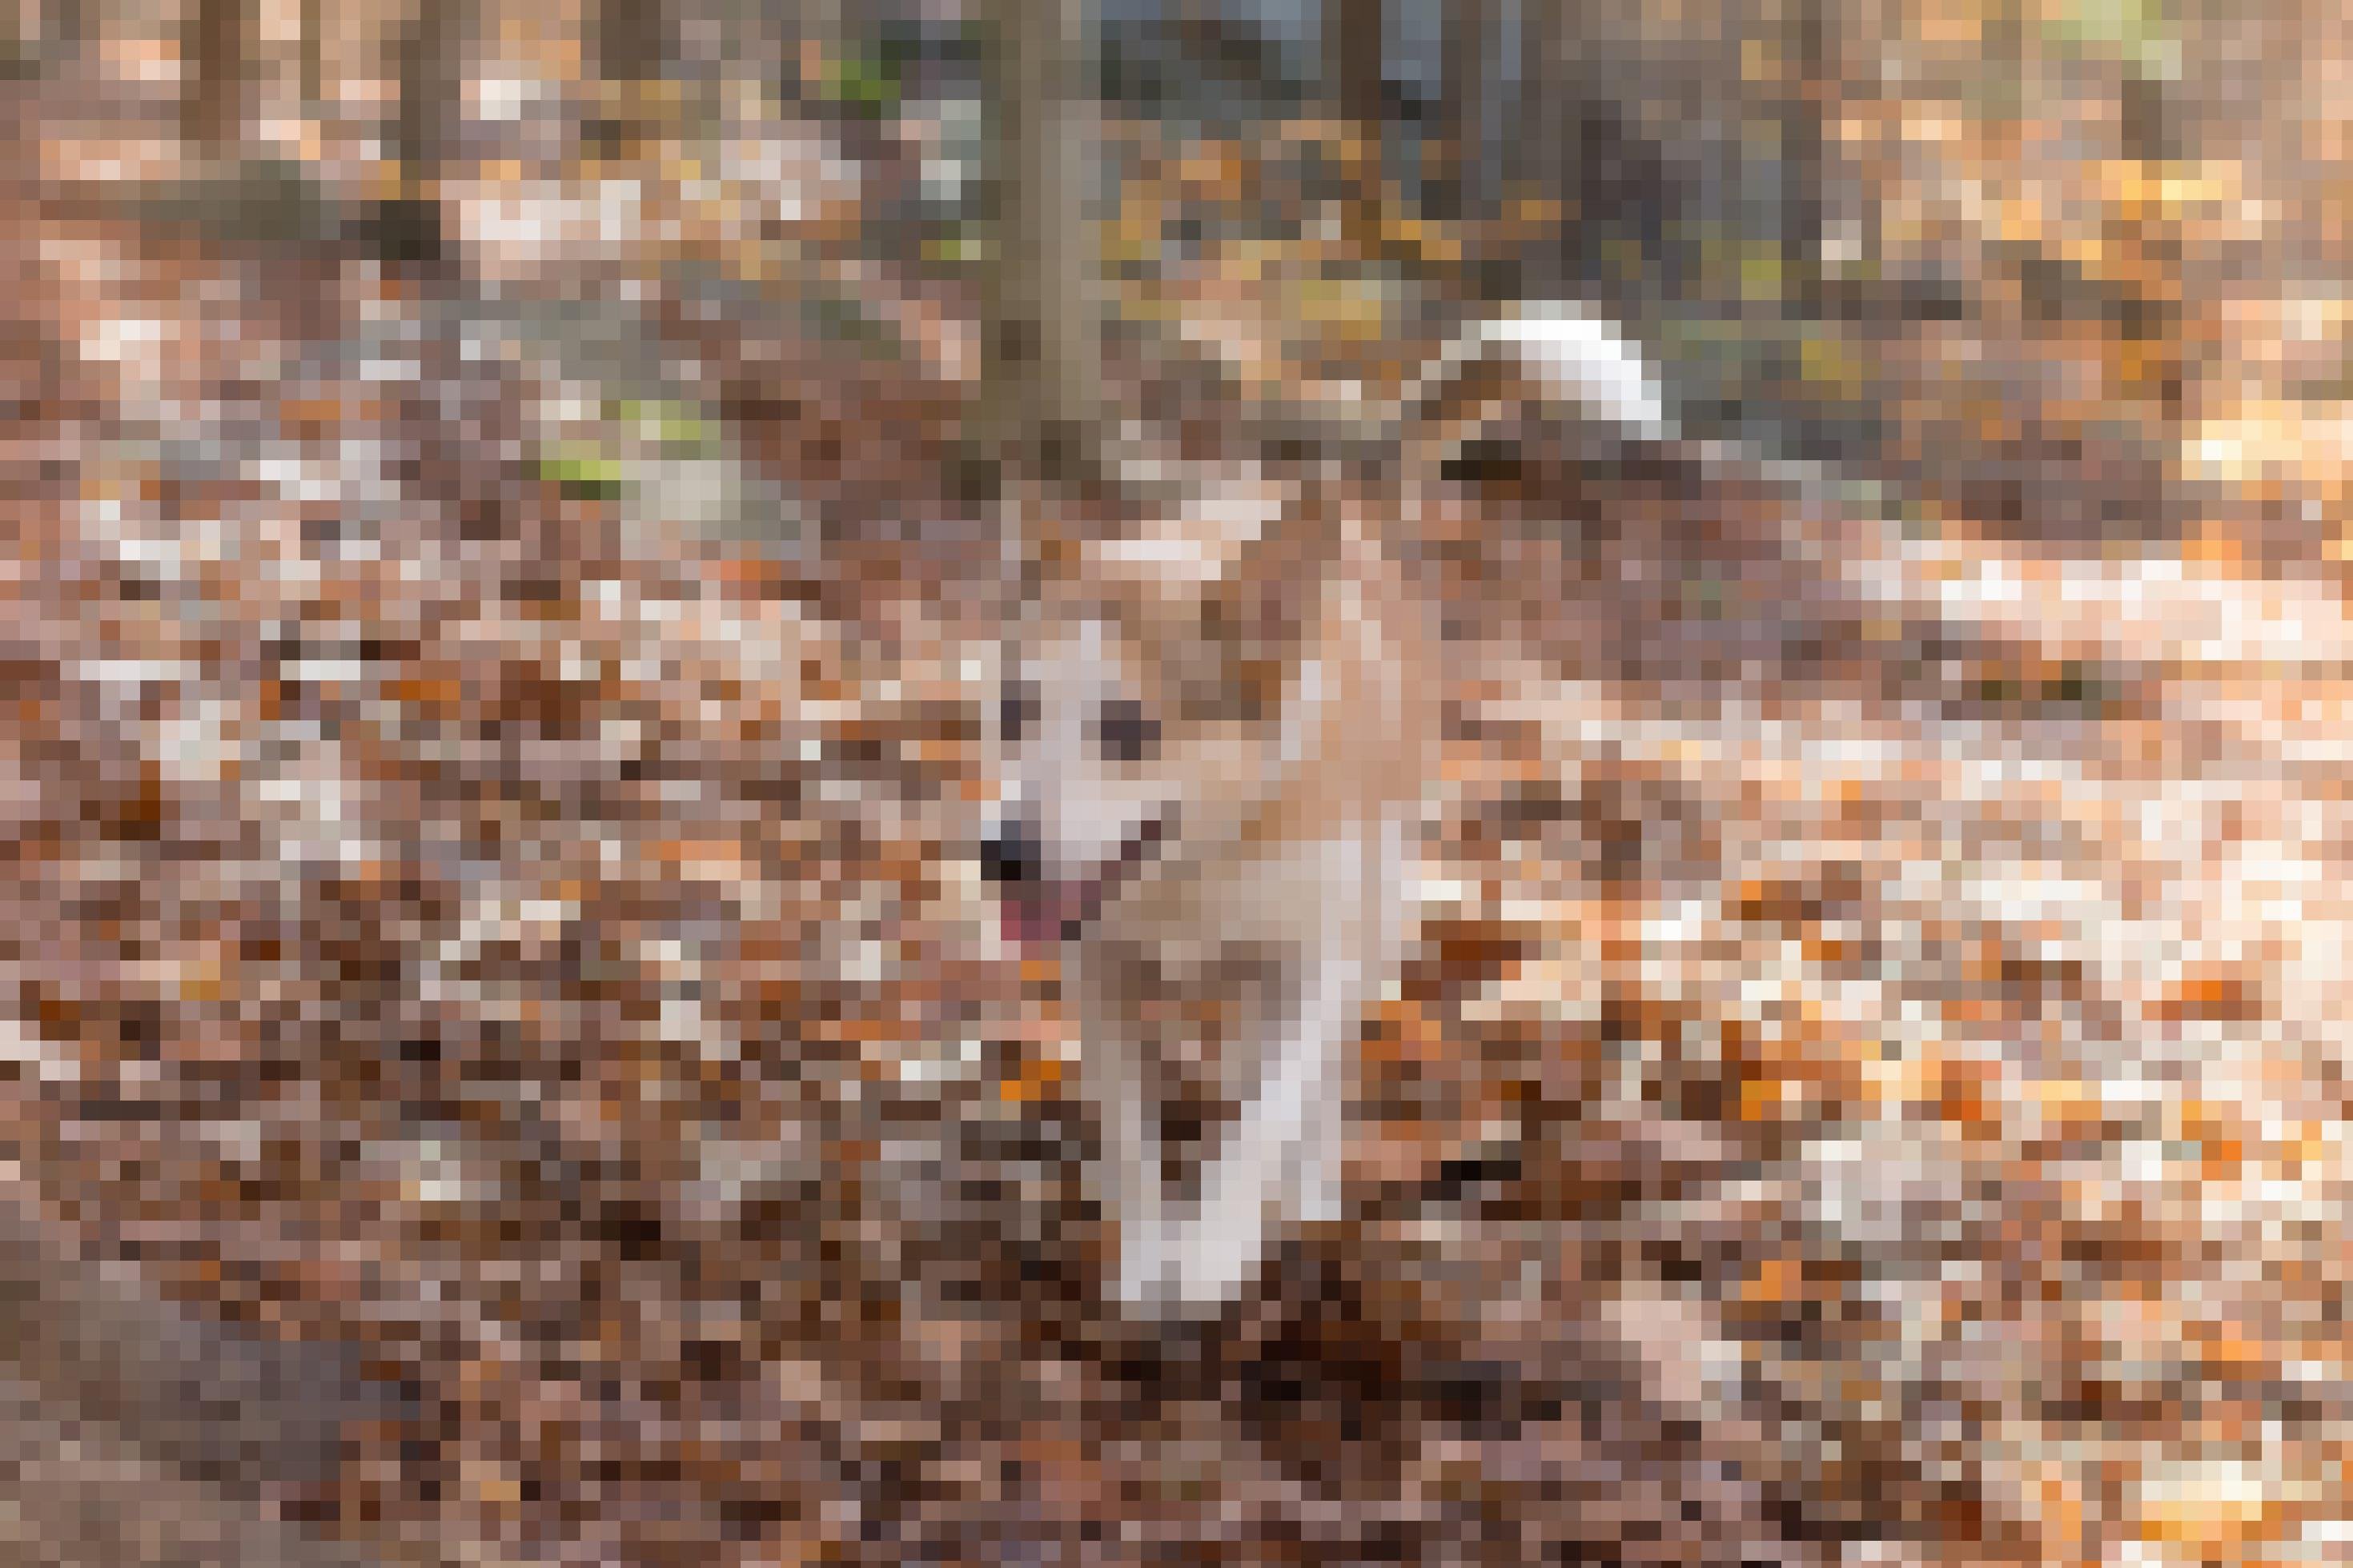 Ein mittelgroßer Hund mit hellbeigem und weißem Fell läuft über einen laubbedeckten Waldboden.